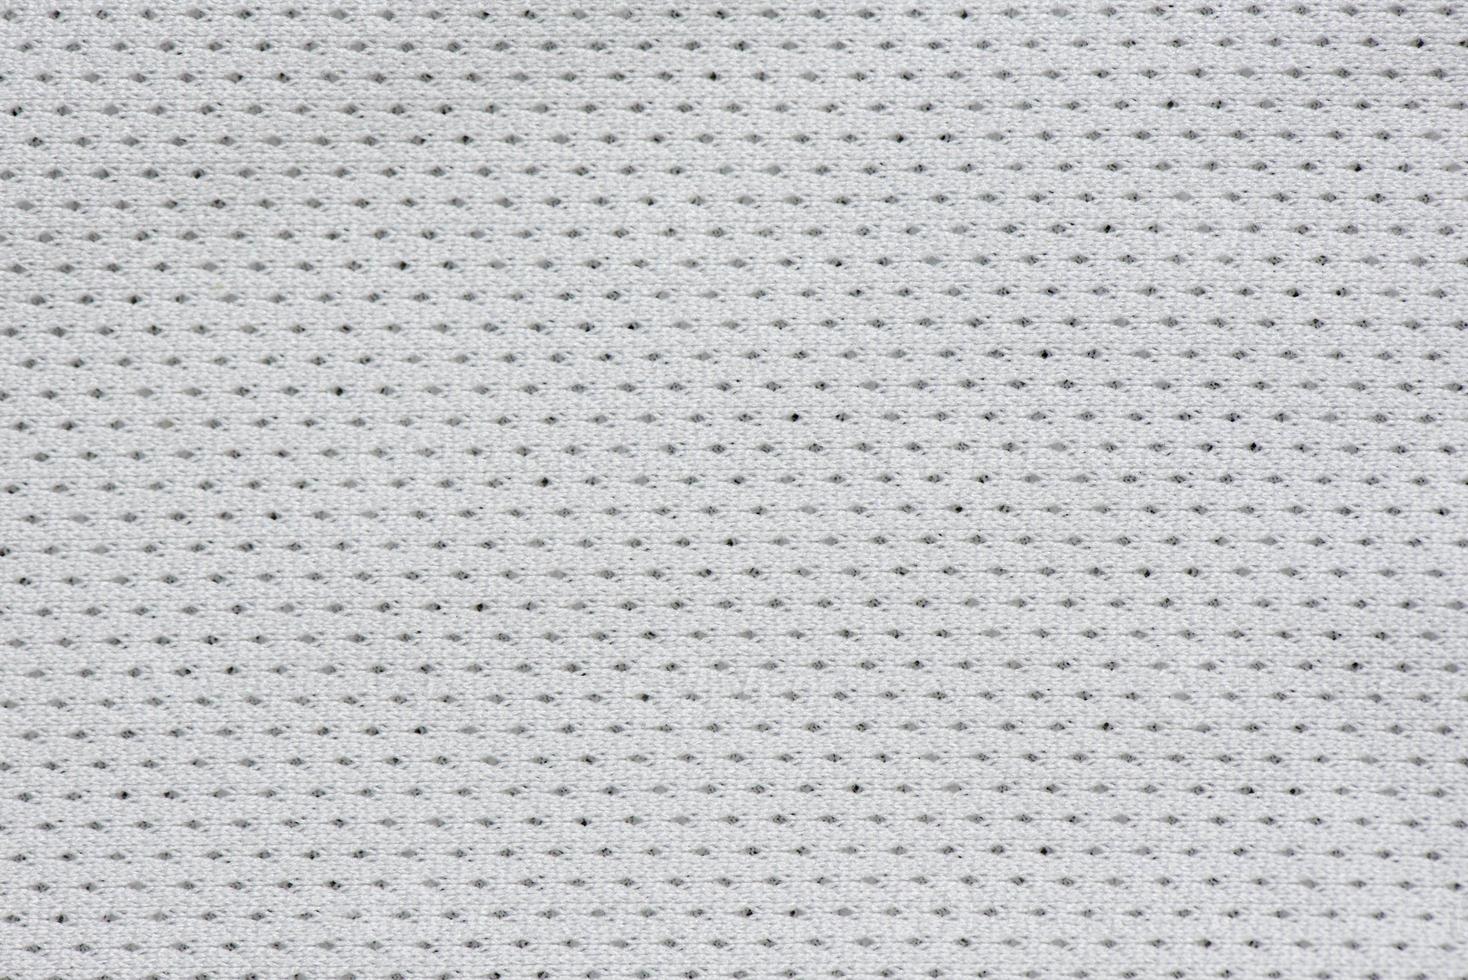 texture de modèle de tissu gris argenté photo